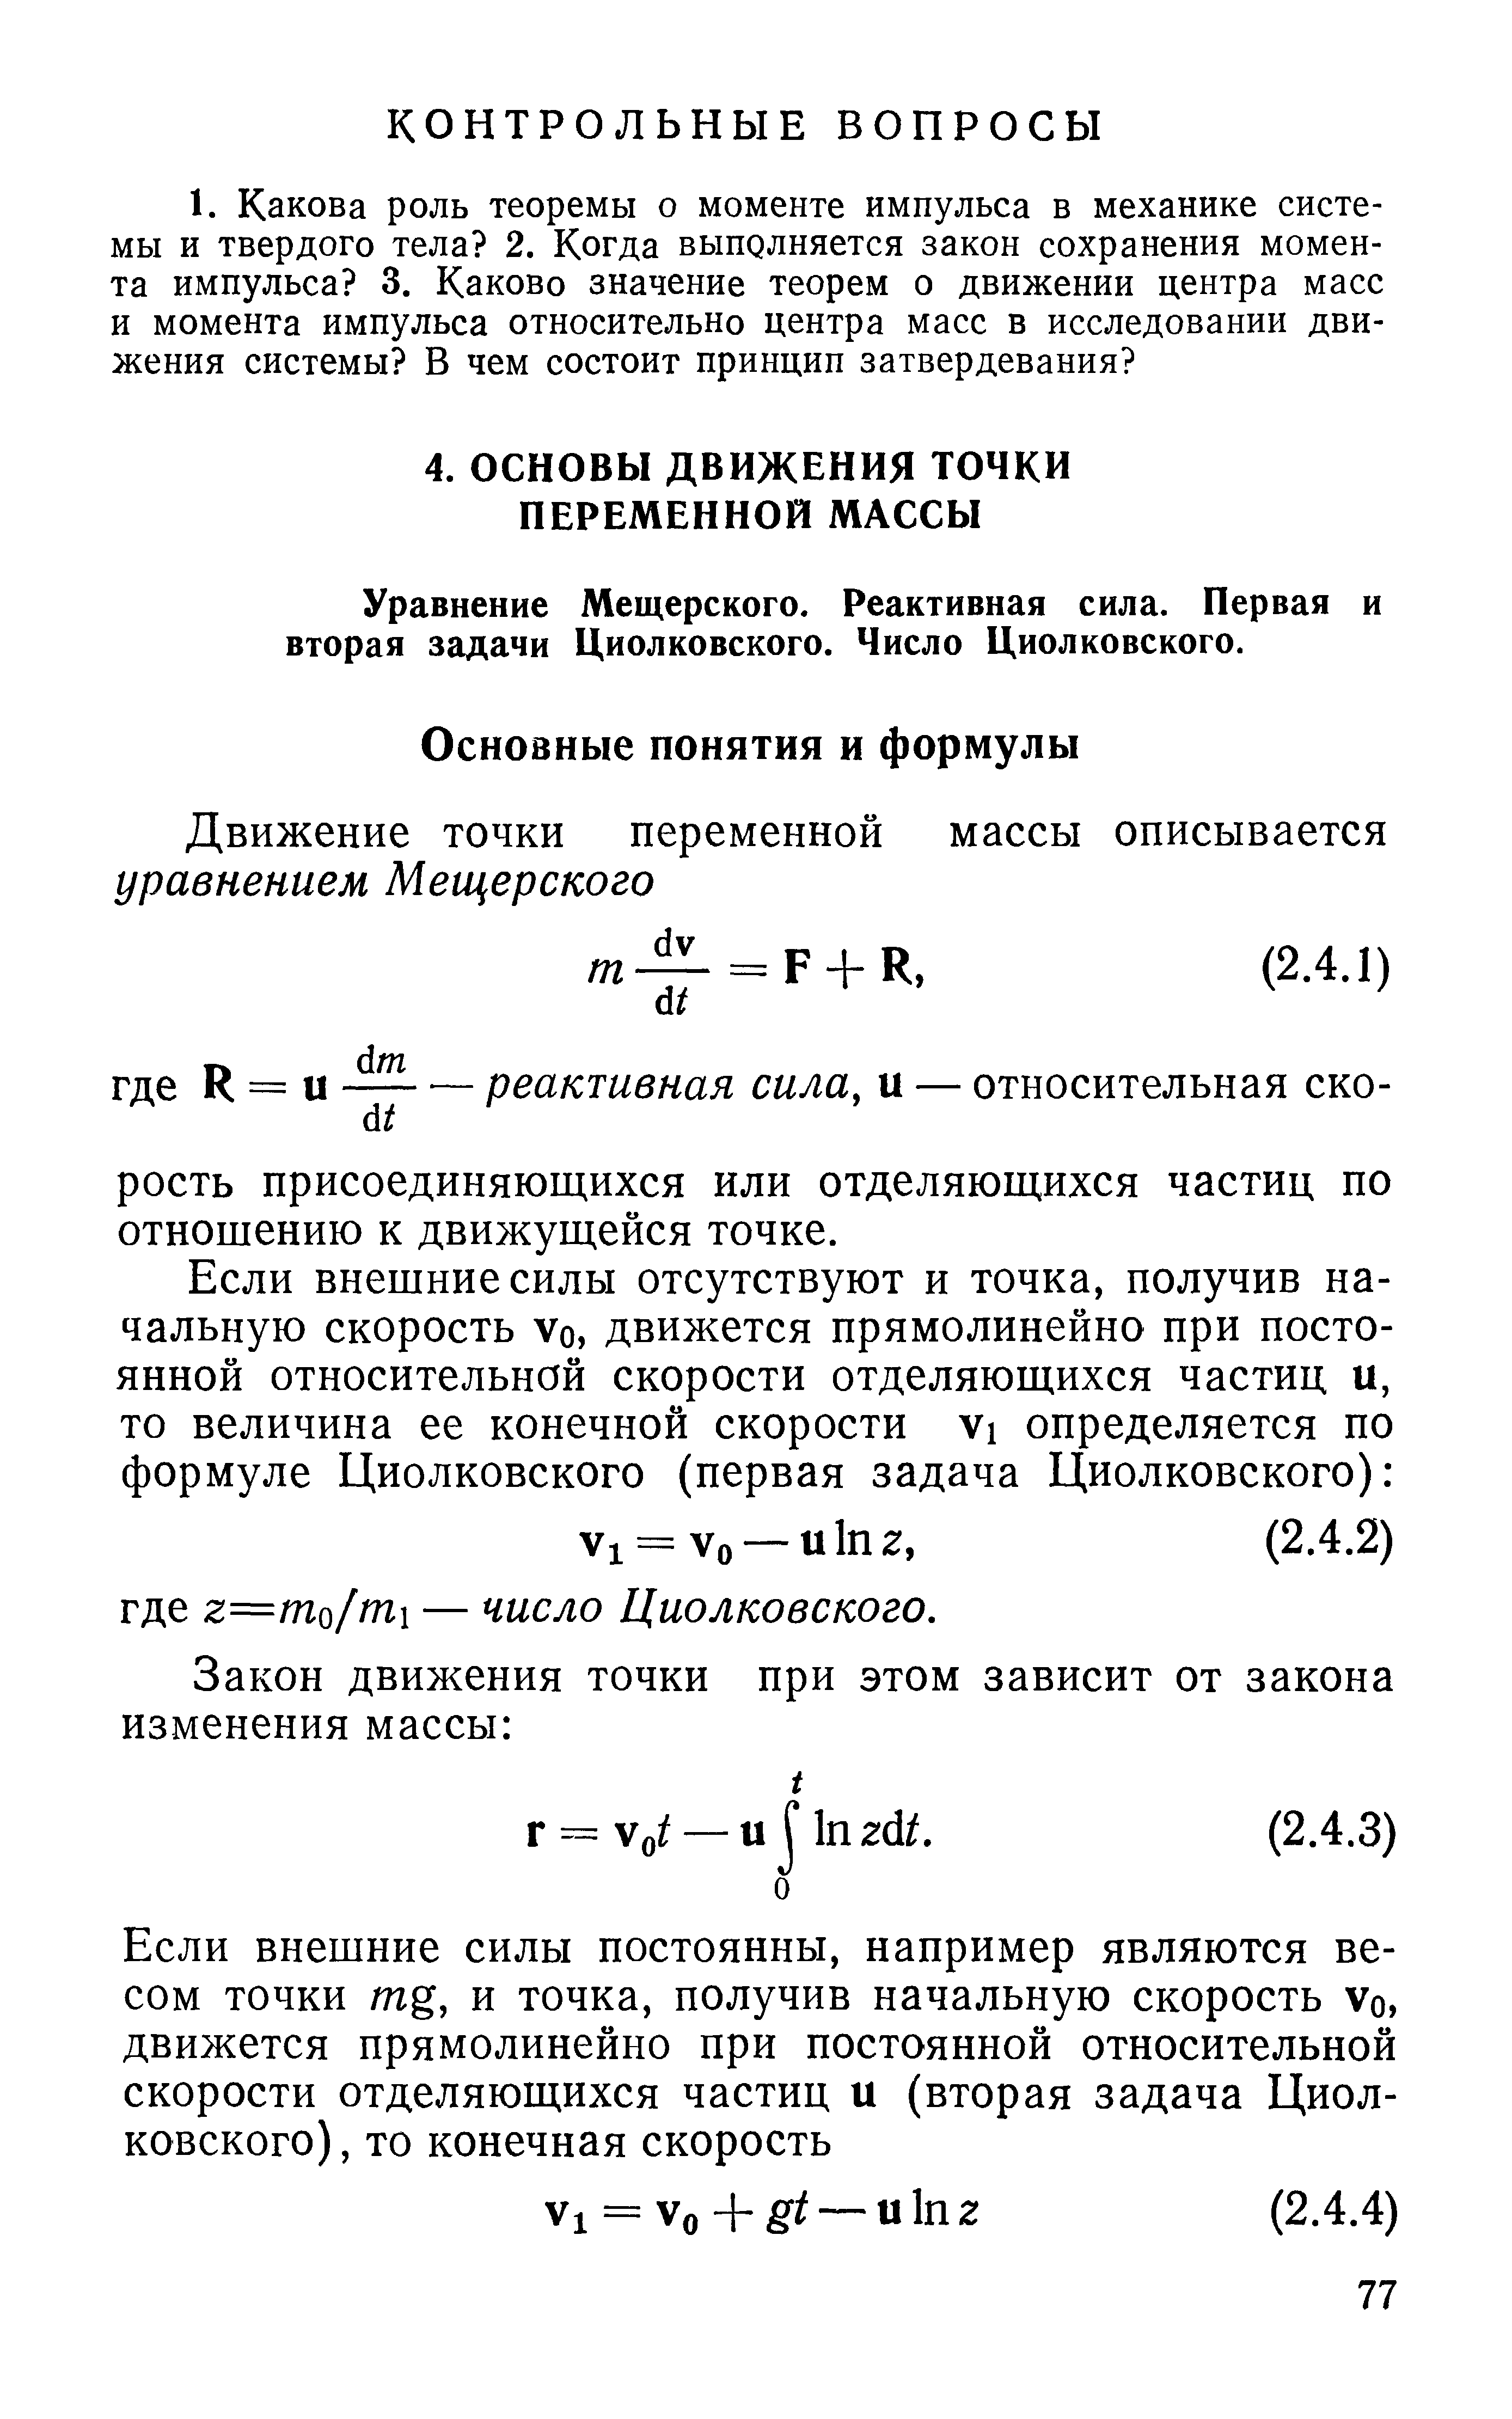 Уравнение Мещерского. Реактивная сила. Первая и вторая задачи Циолковского. Число Циолковского.
